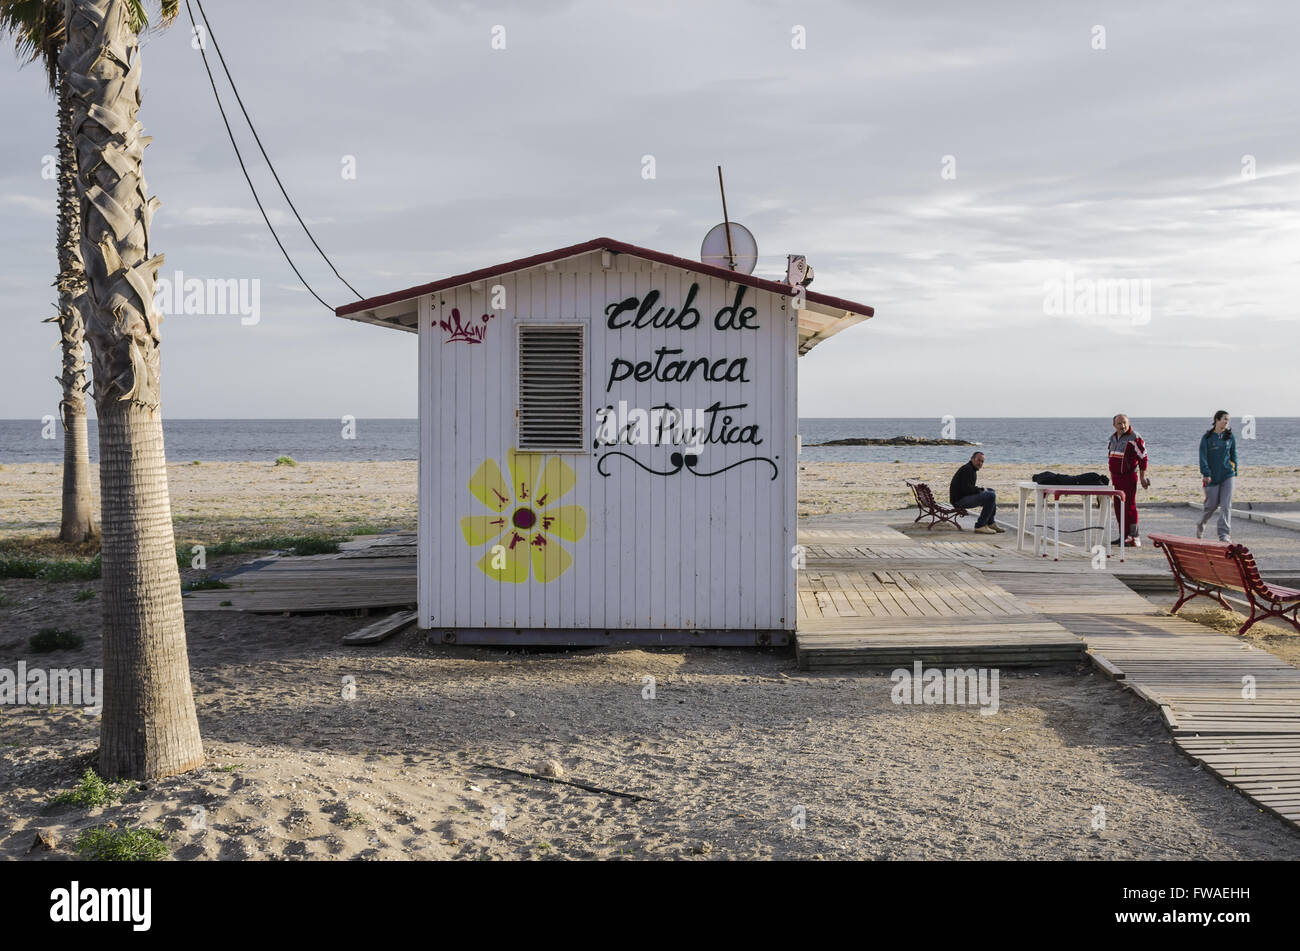 A ball games hut view in Carboneras beach, Almeria, Spain Stock Photo